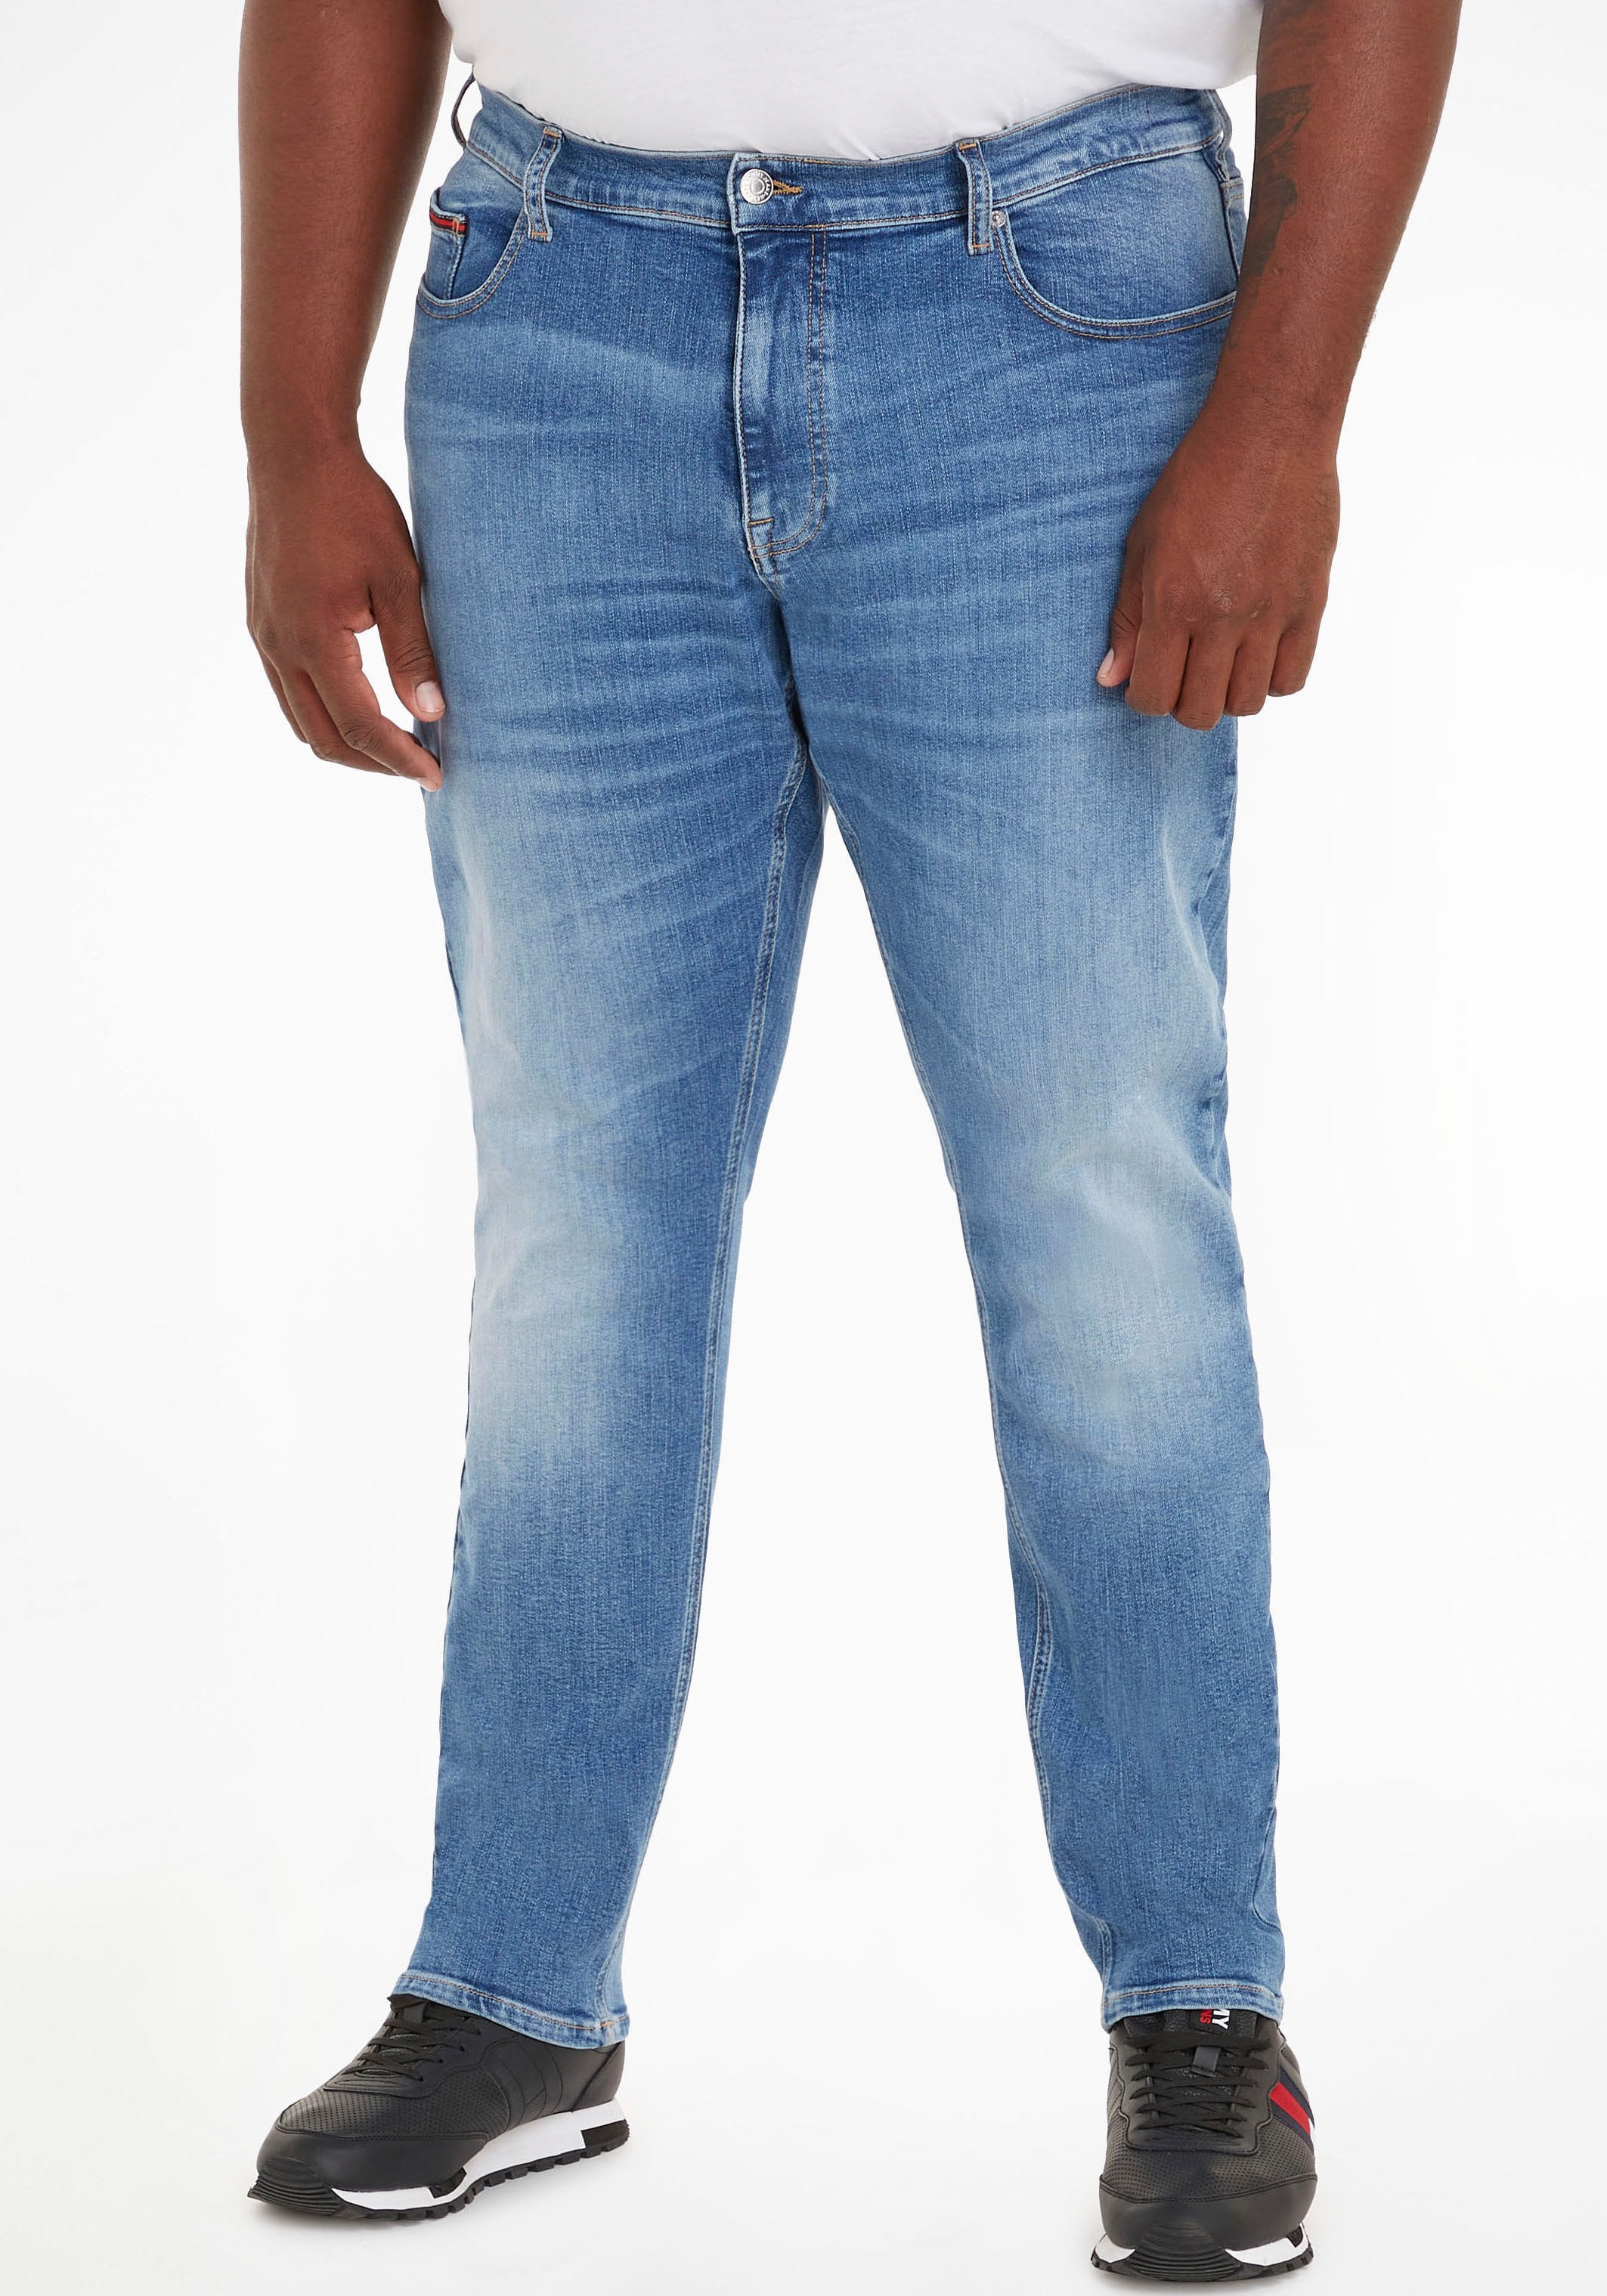 Jeans ohne Mindestbestellwert bestellen ➤